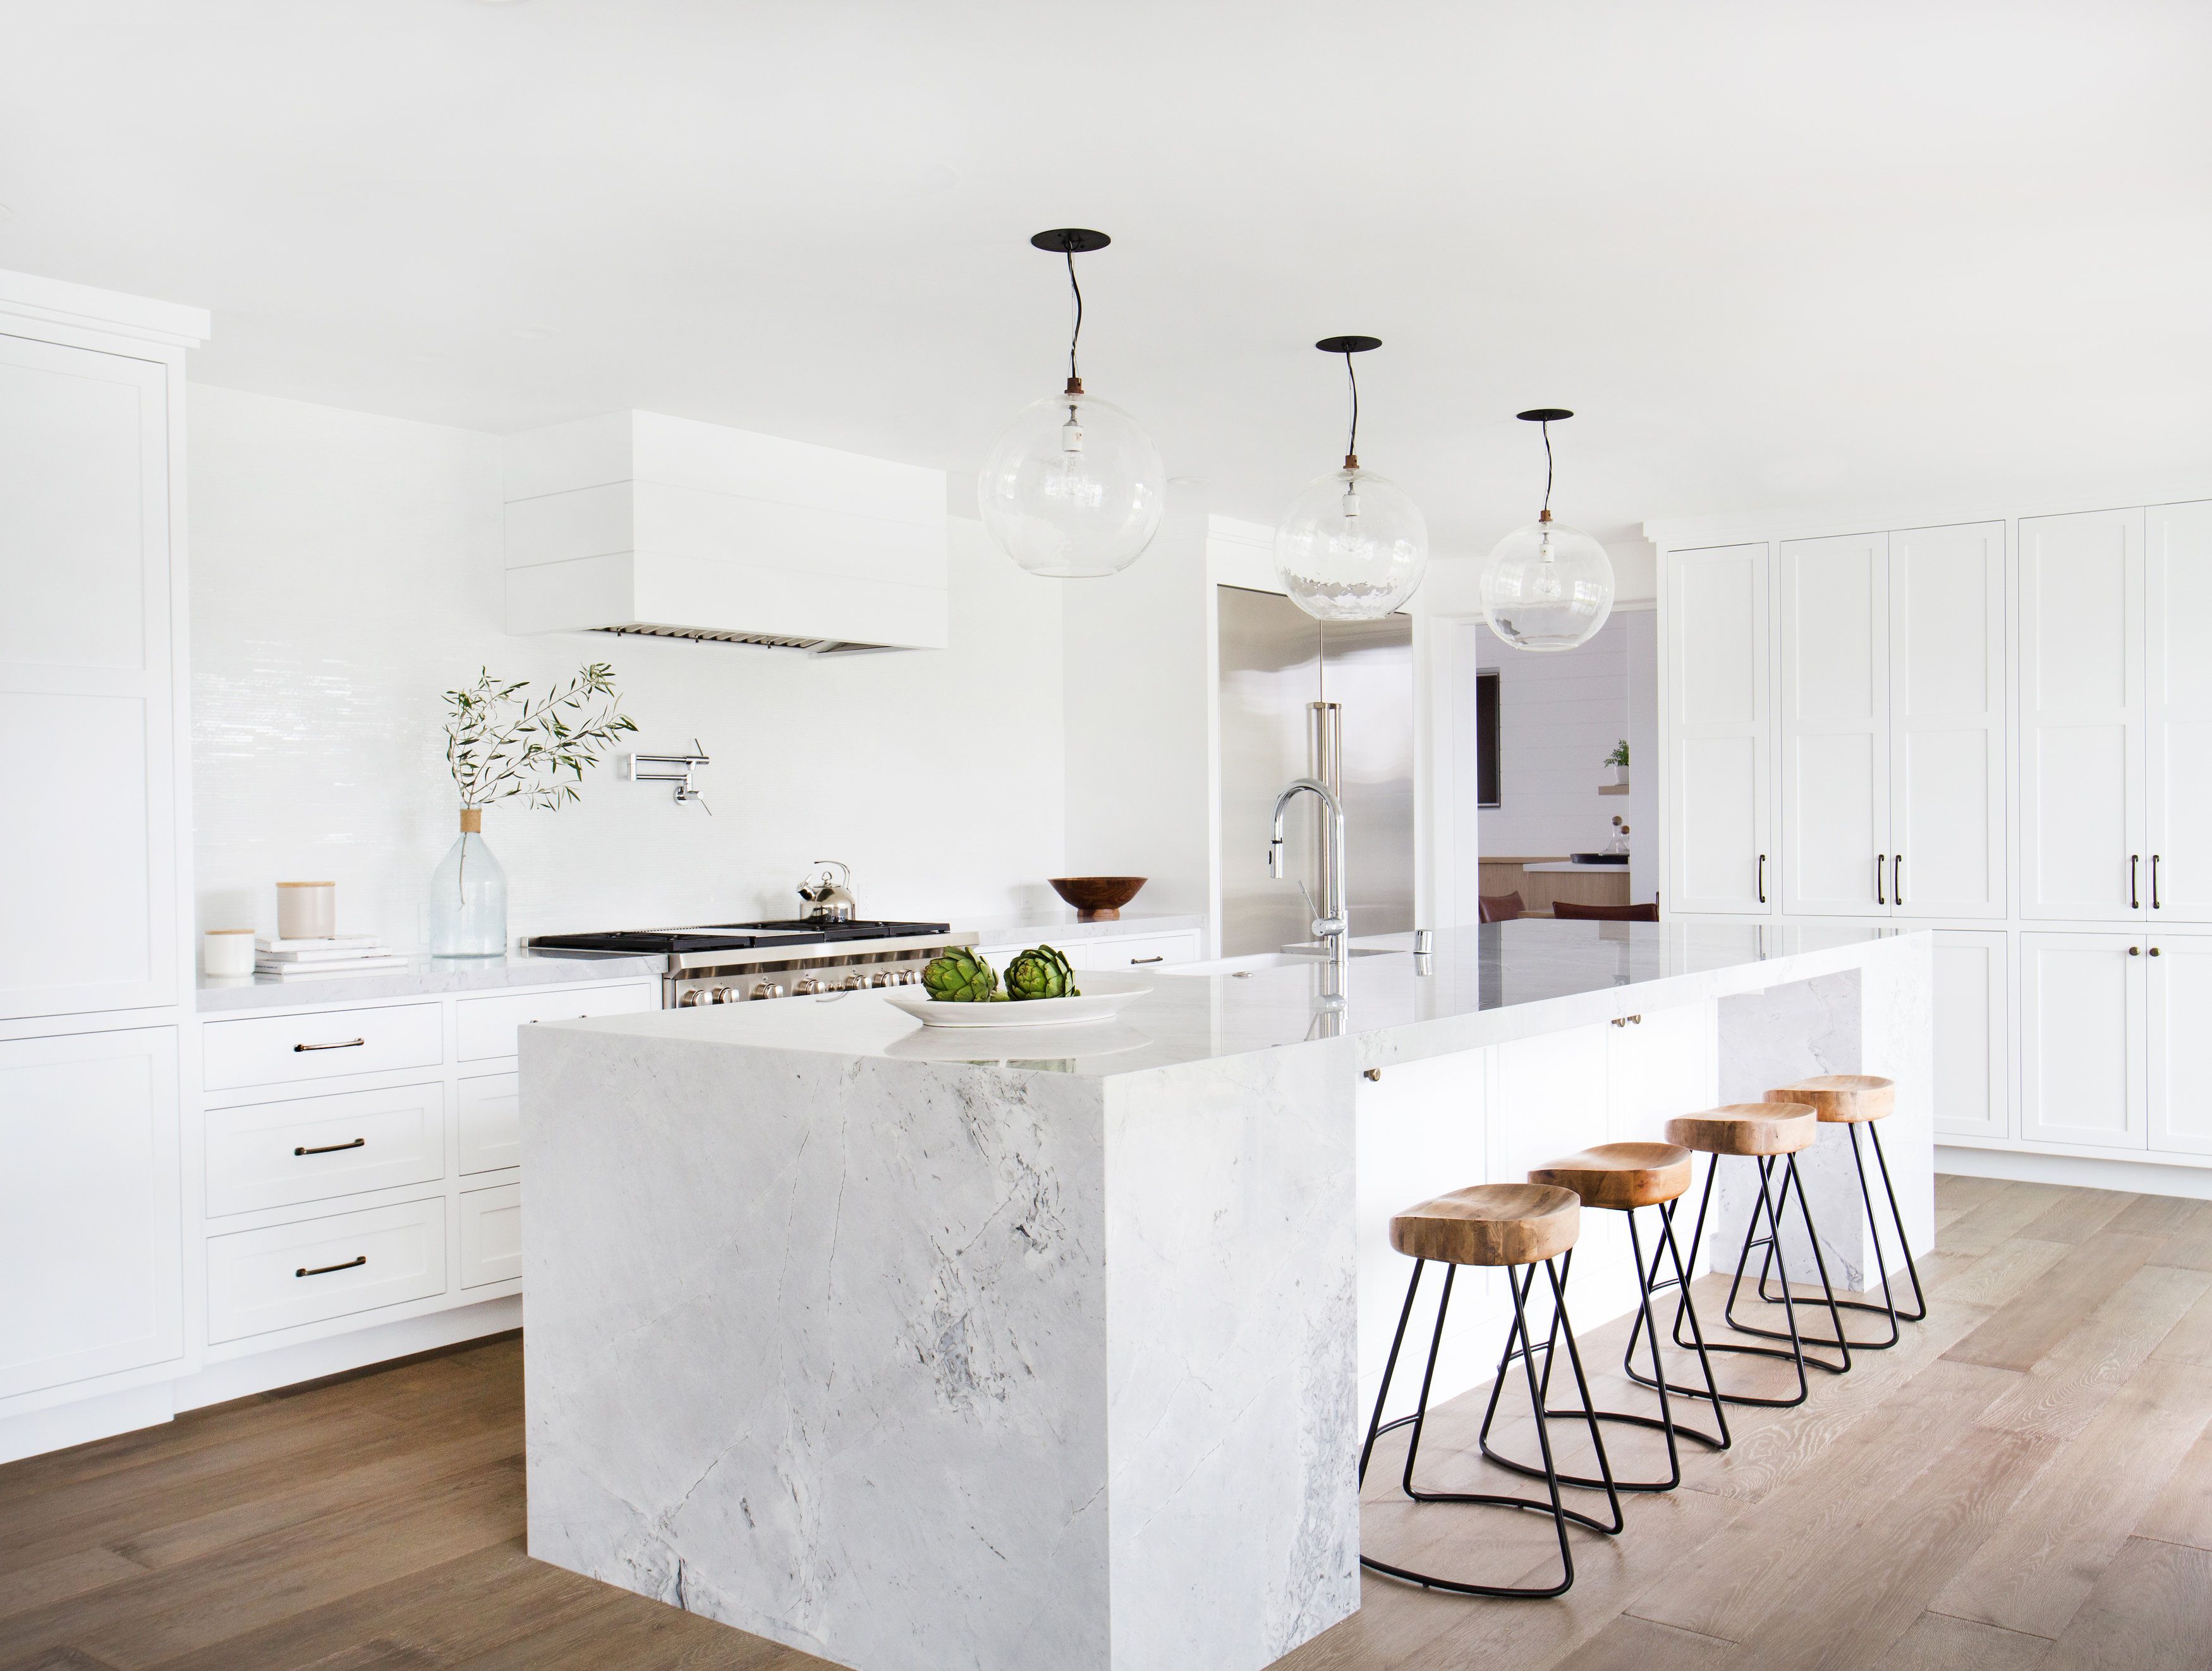 15 White Kitchen Design Ideas Decorating White Kitchens